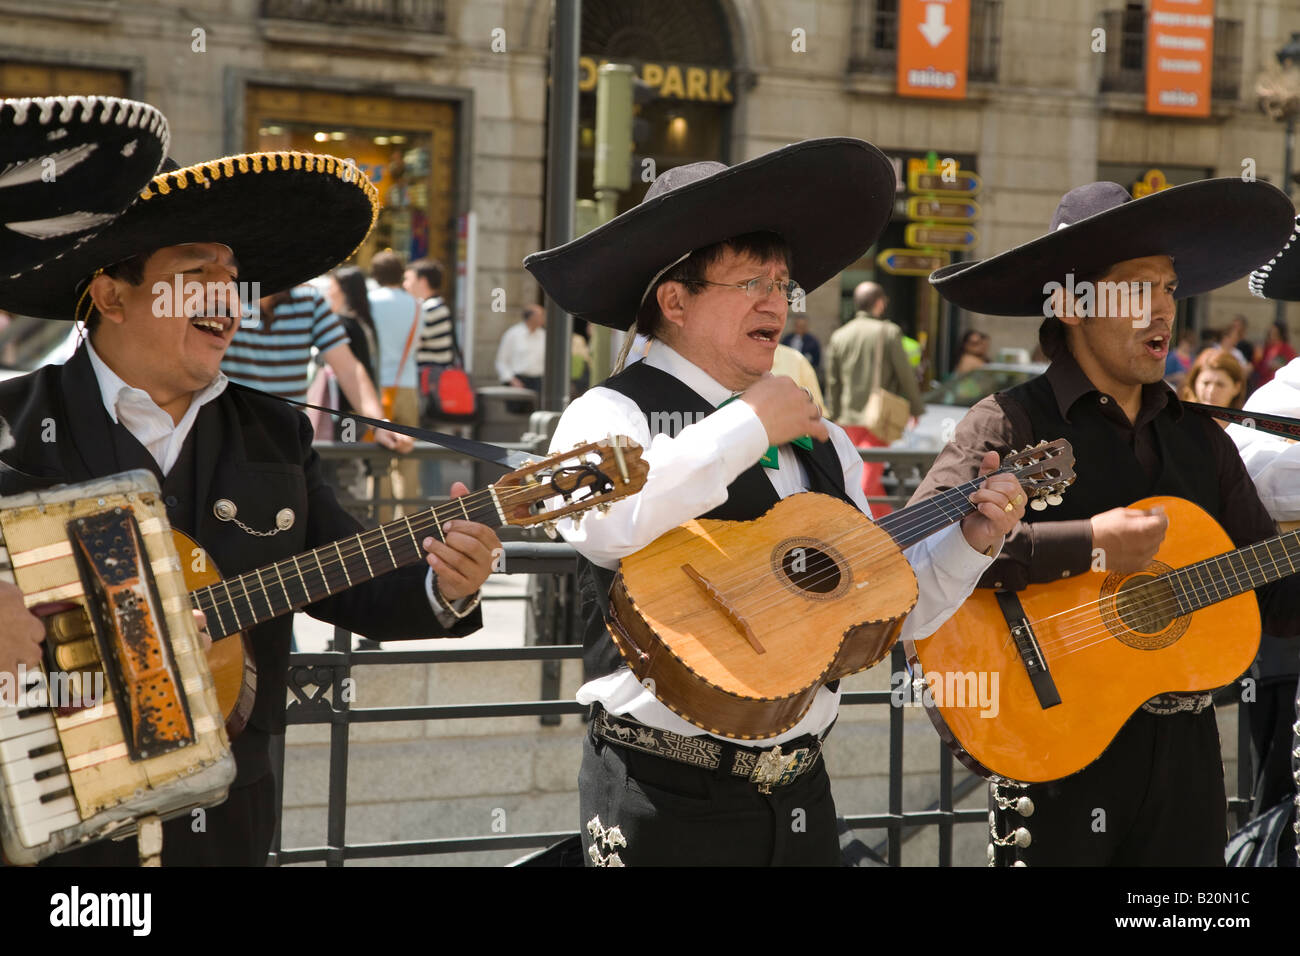 Espagne Madrid Membres de mariachis chantant et jouant de la guitare électrique sur la Plaza del Sol, musique et costumes traditionnels mexicains Banque D'Images